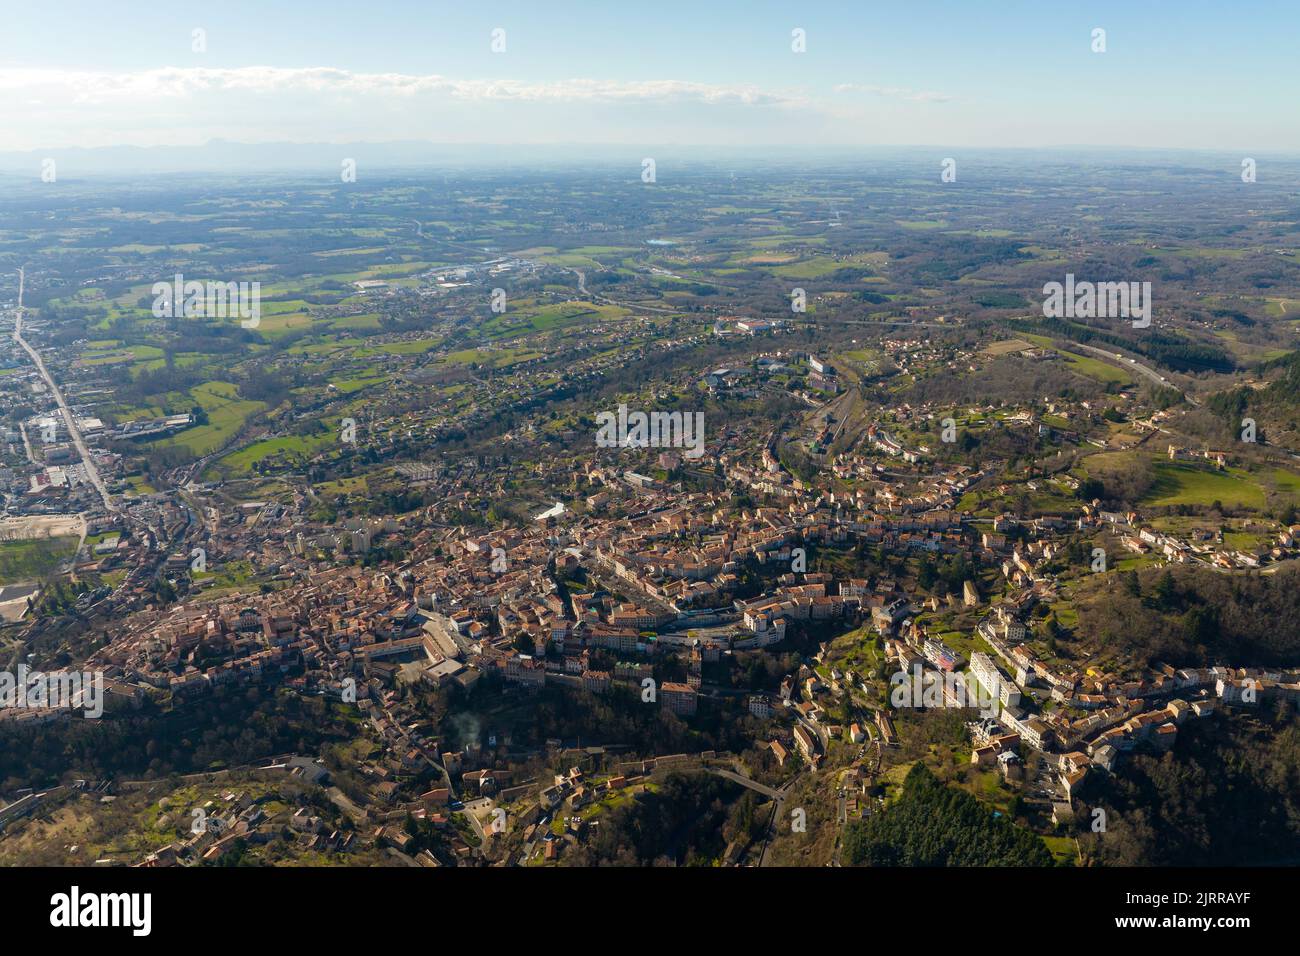 Veduta aerea del centro storico denso della città di Thiers nel dipartimento di Puy-de-Dome, regione Auvergne-Rhone-Alpes in Francia. Tetti di vecchi edifici e. Foto Stock